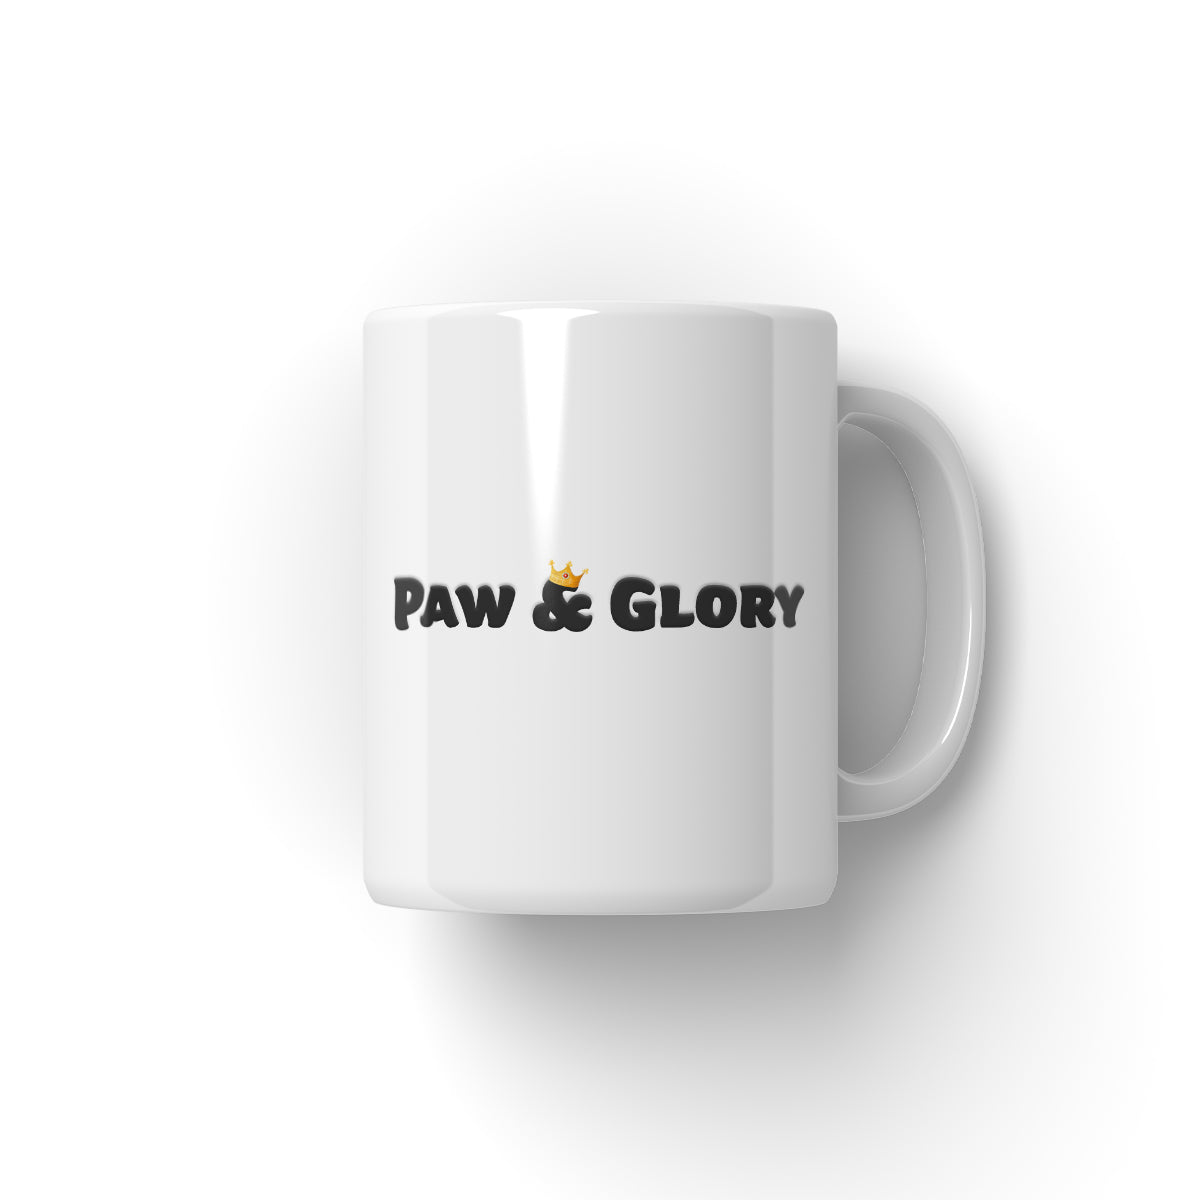 Paw & Glory, paw and glory, personalised pet mugs uk, custom pet mug, pet art mug, personalised coffee mug with dogs, personalised pet coffee mugs, custom mug with dogs, Pet Portrait Mug,